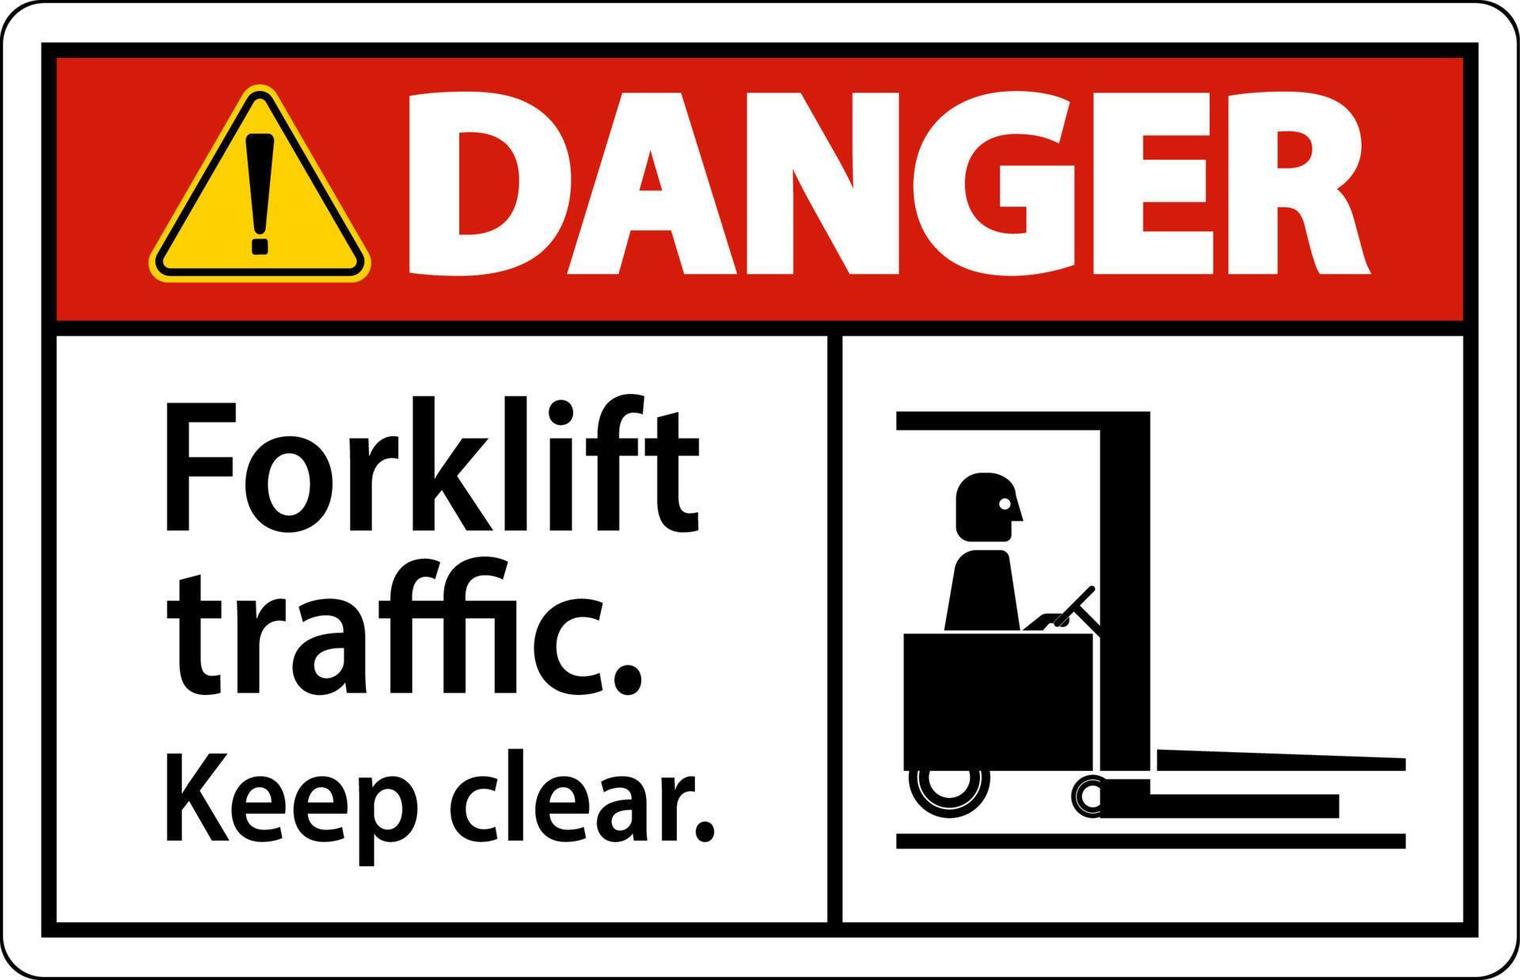 Danger Forklift Traffic Keep Clear Sign vector